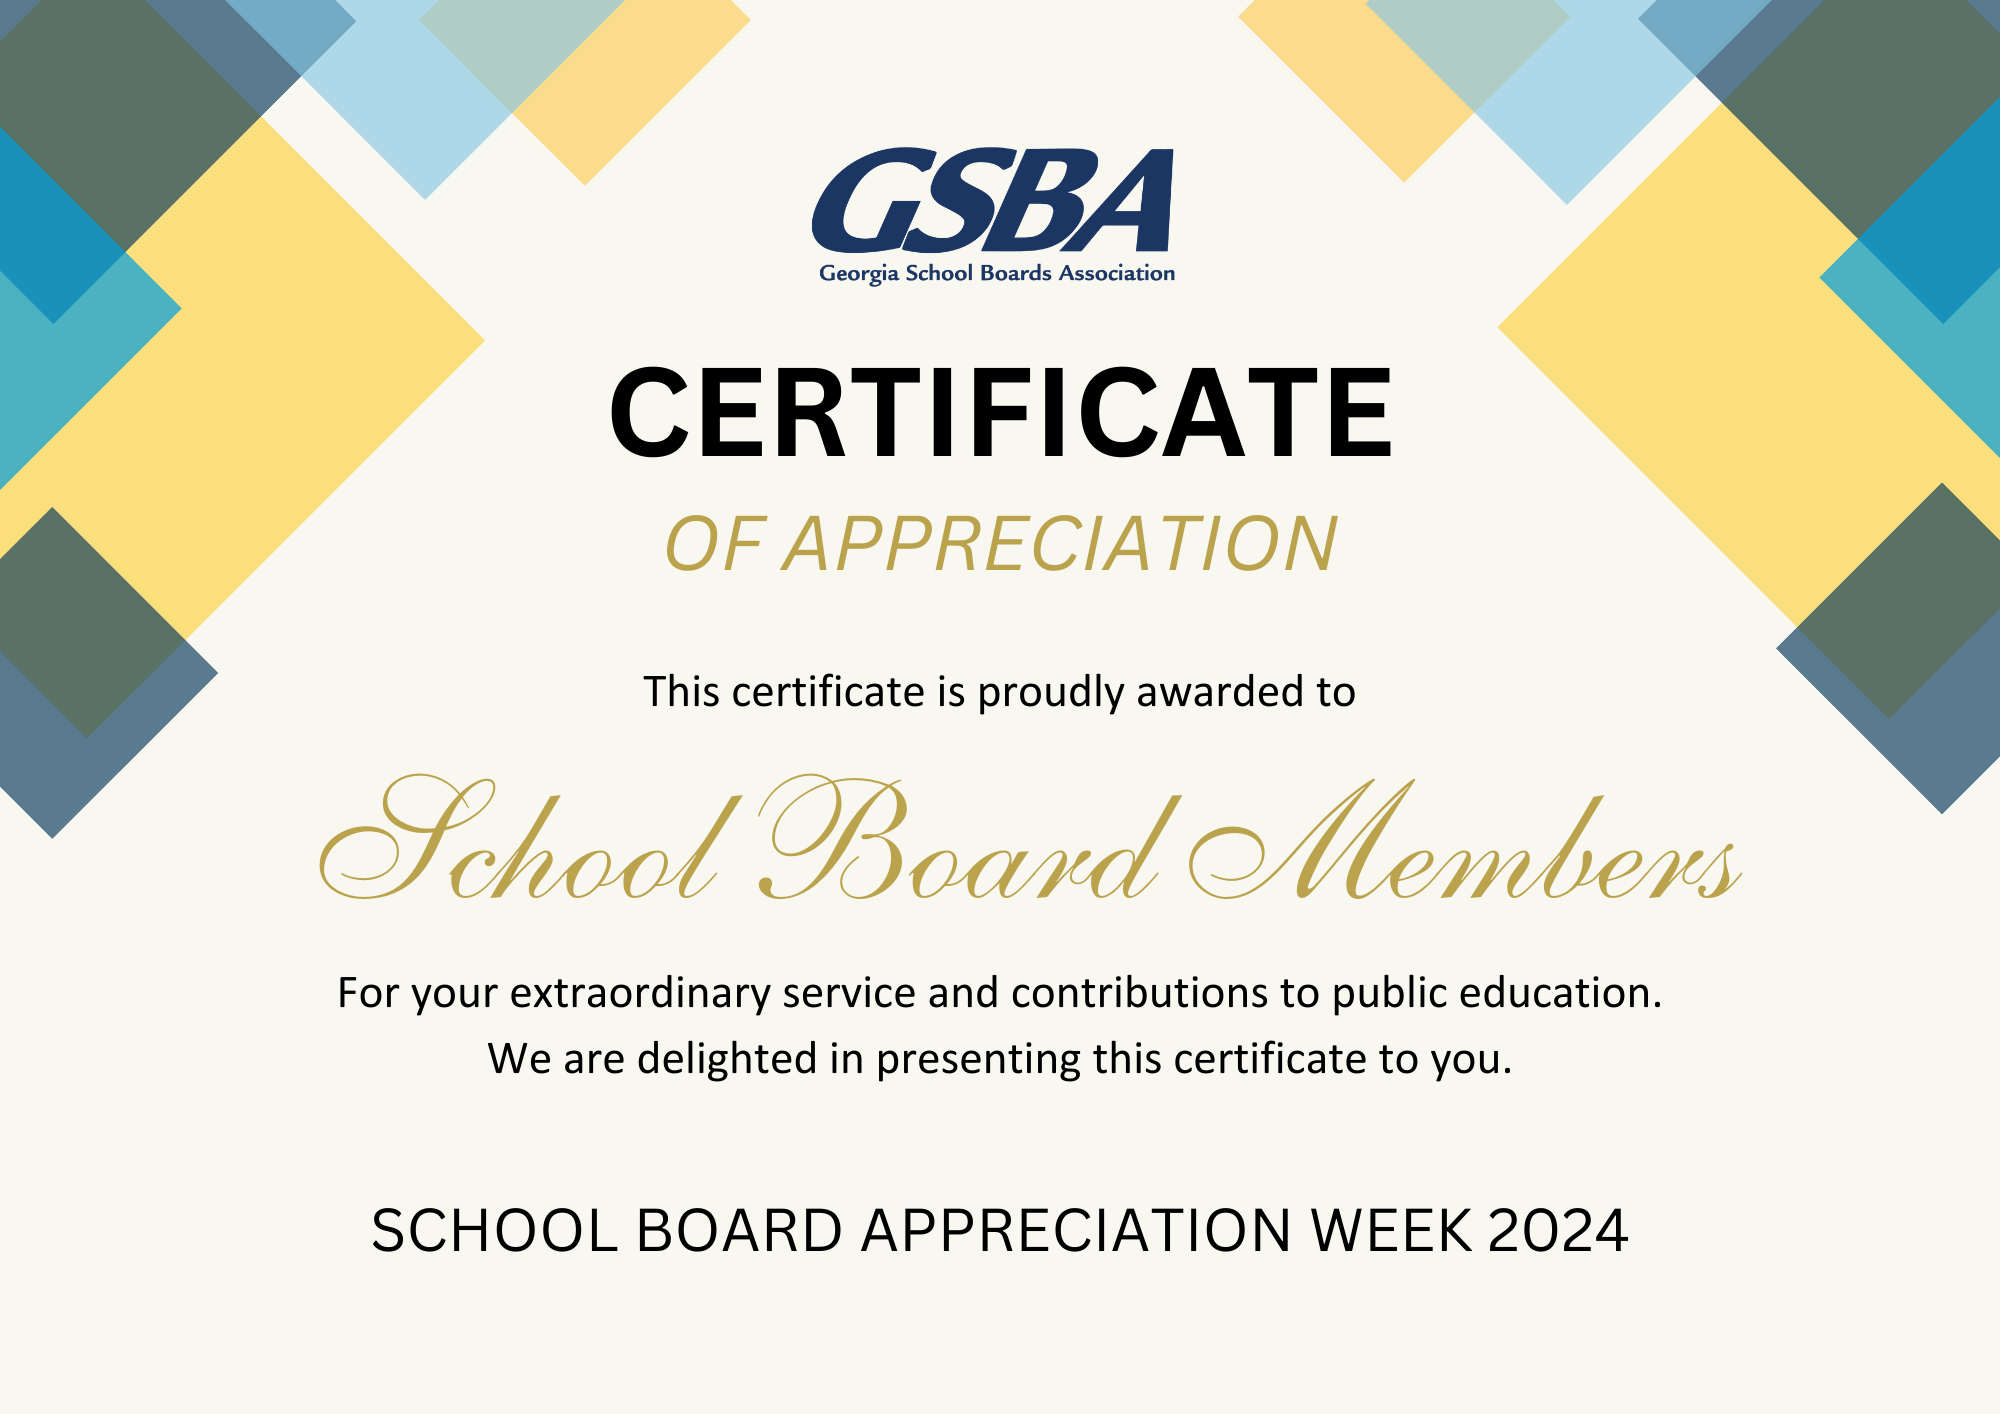 GSBA Certificate of Appreciation